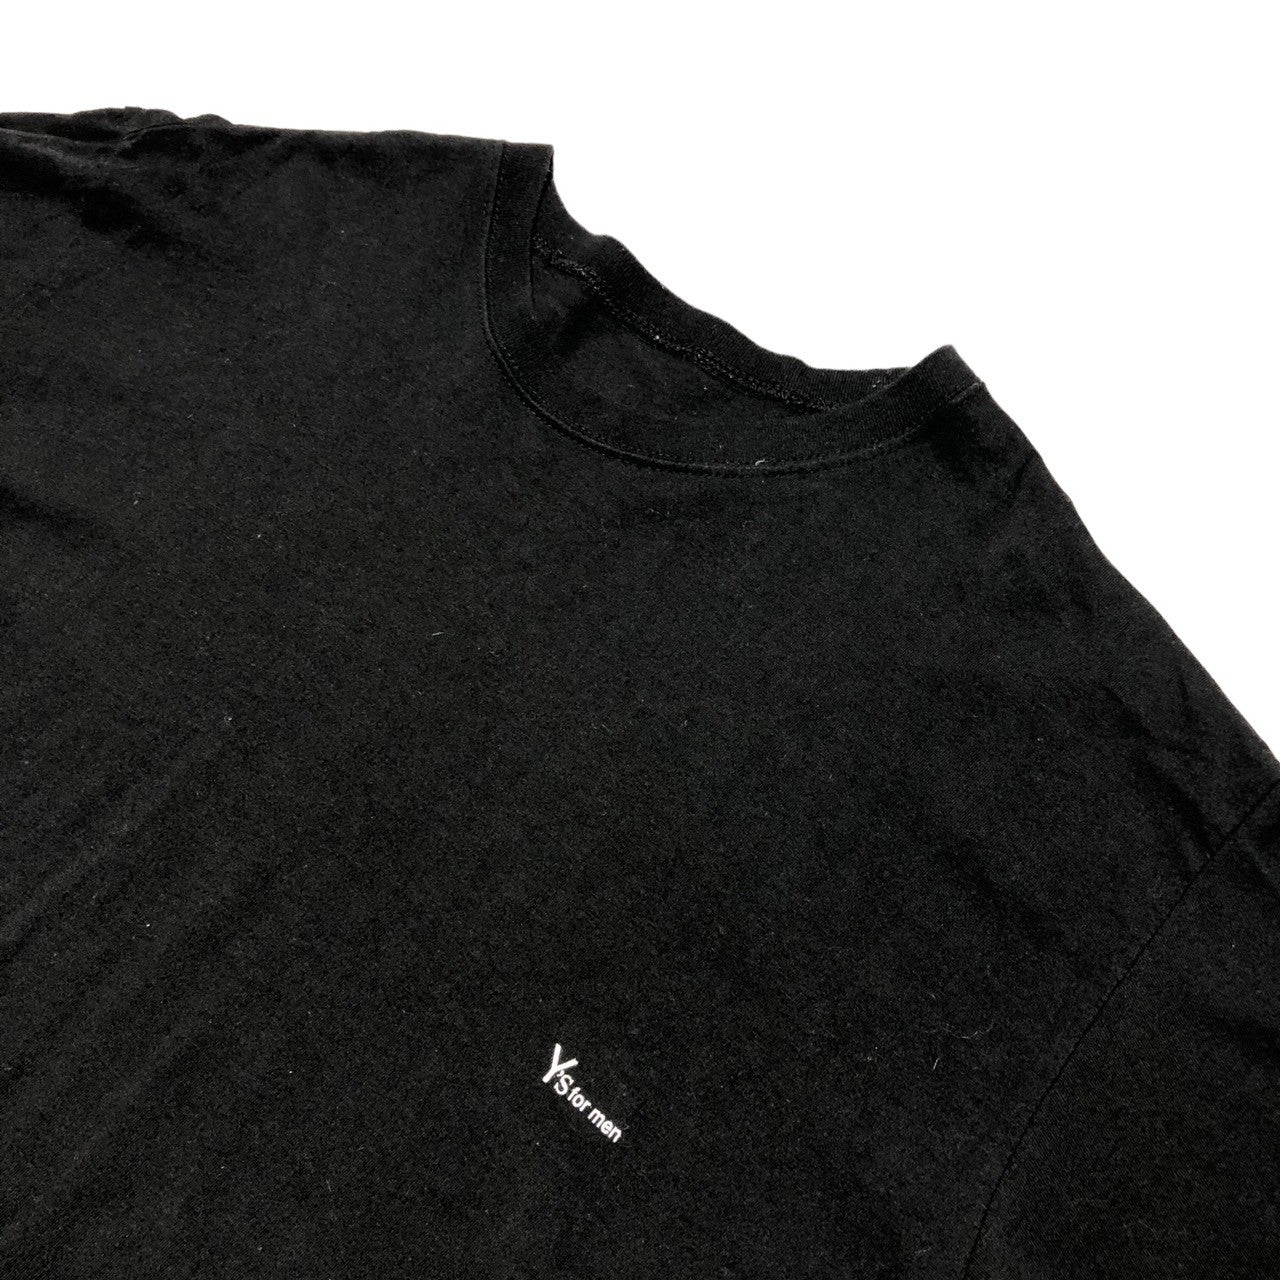 Y's for men(ワイズフォーメン) 90's Vintage one point logo short sleeve T-shirt ヴィンテージ ワンポイントロゴ ショートスリーブ Tシャツ 90年代 MR-T01-001 表記なし(FREE) ブラック×ホワイト